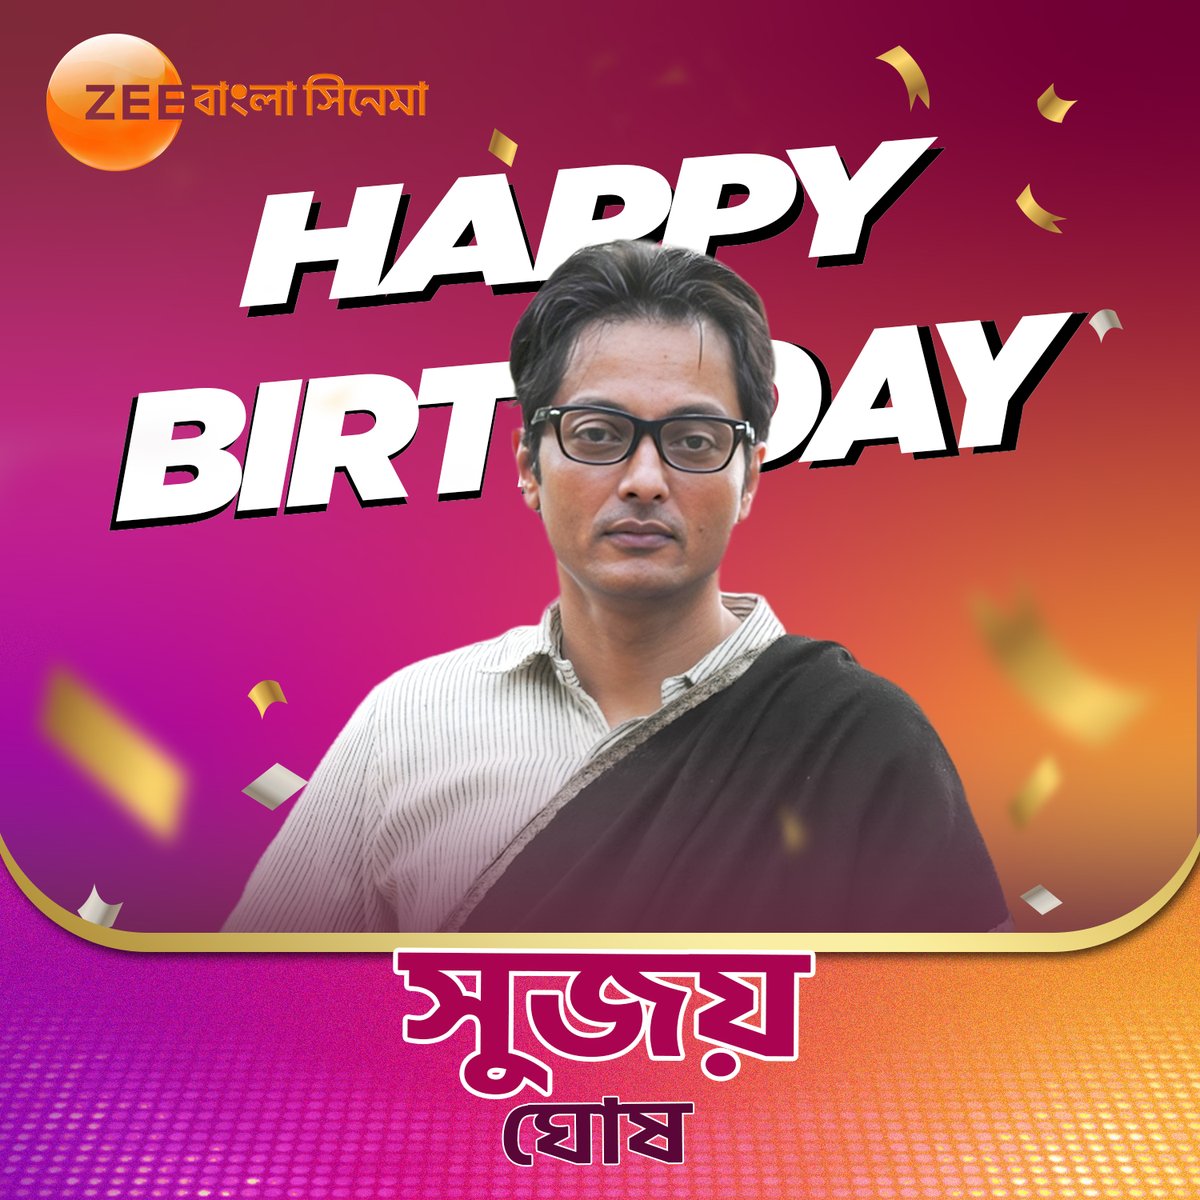 জন্মদিনে আপনাকে জানাই হার্দিক শুভেচ্ছা। 

#SujoyGhosh #ZeeBanglaCinema #Birthday #Greetings